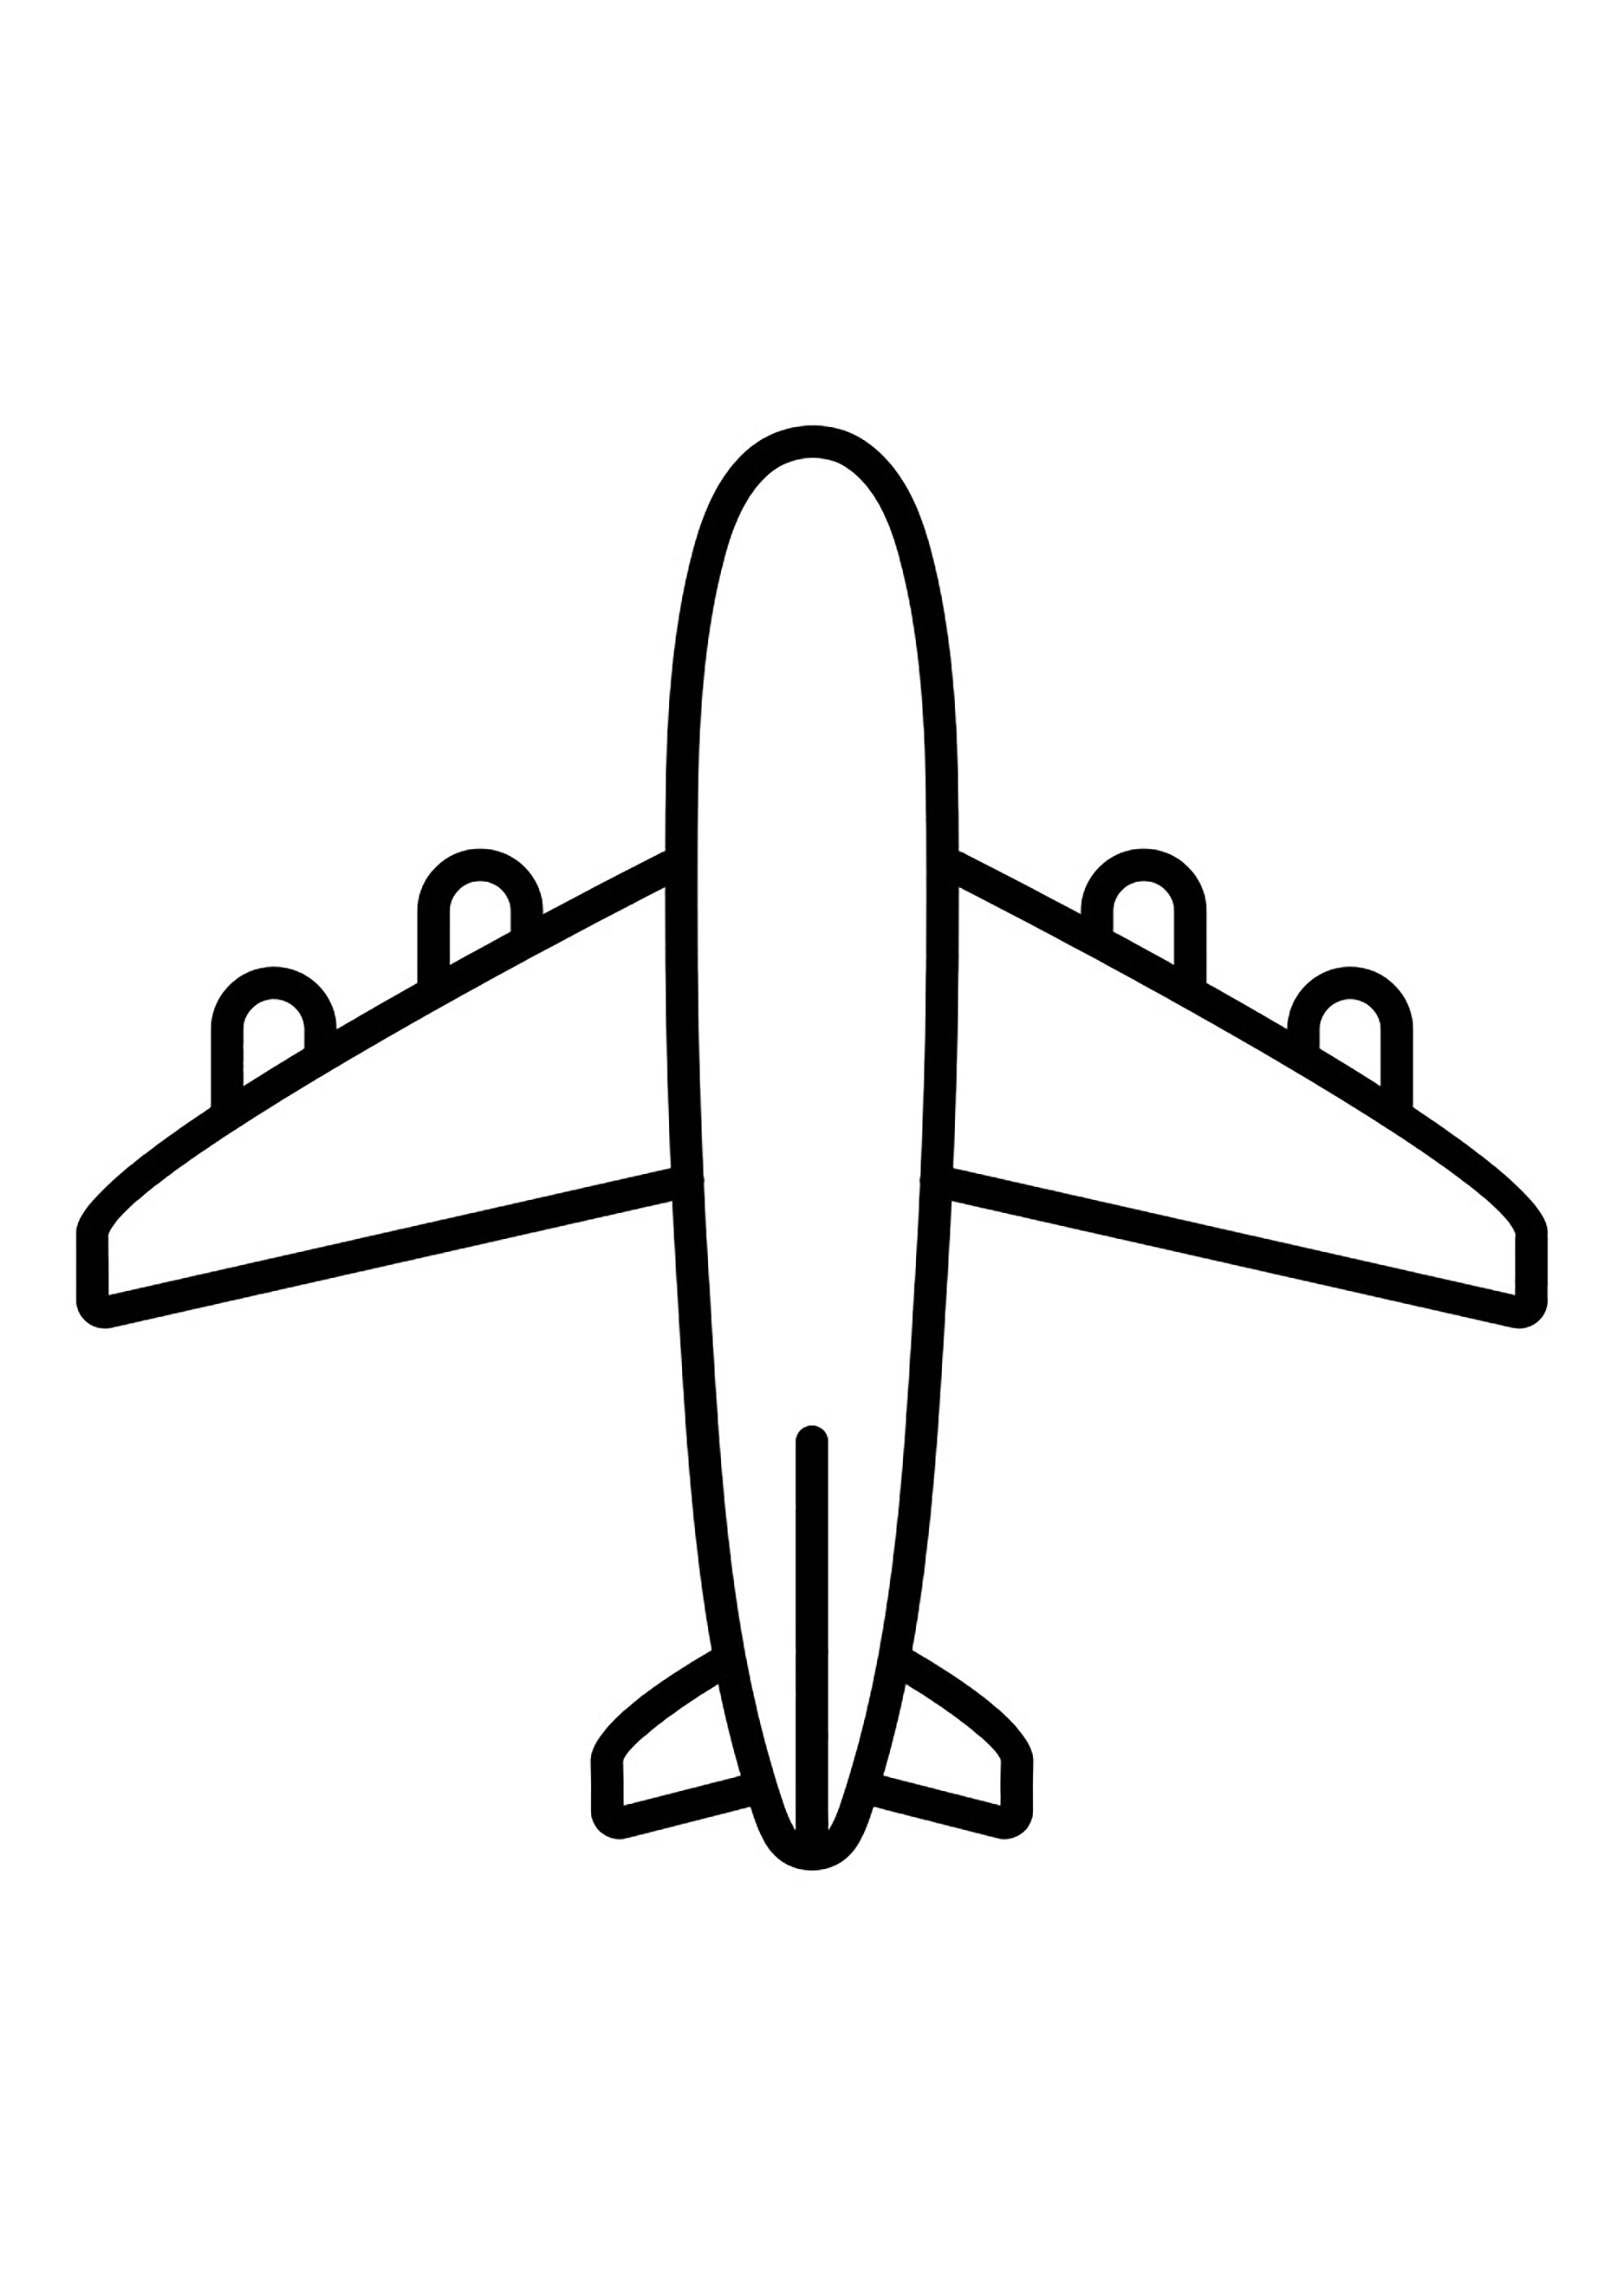 Très simple dessin d'un avion avec 4 moteurs